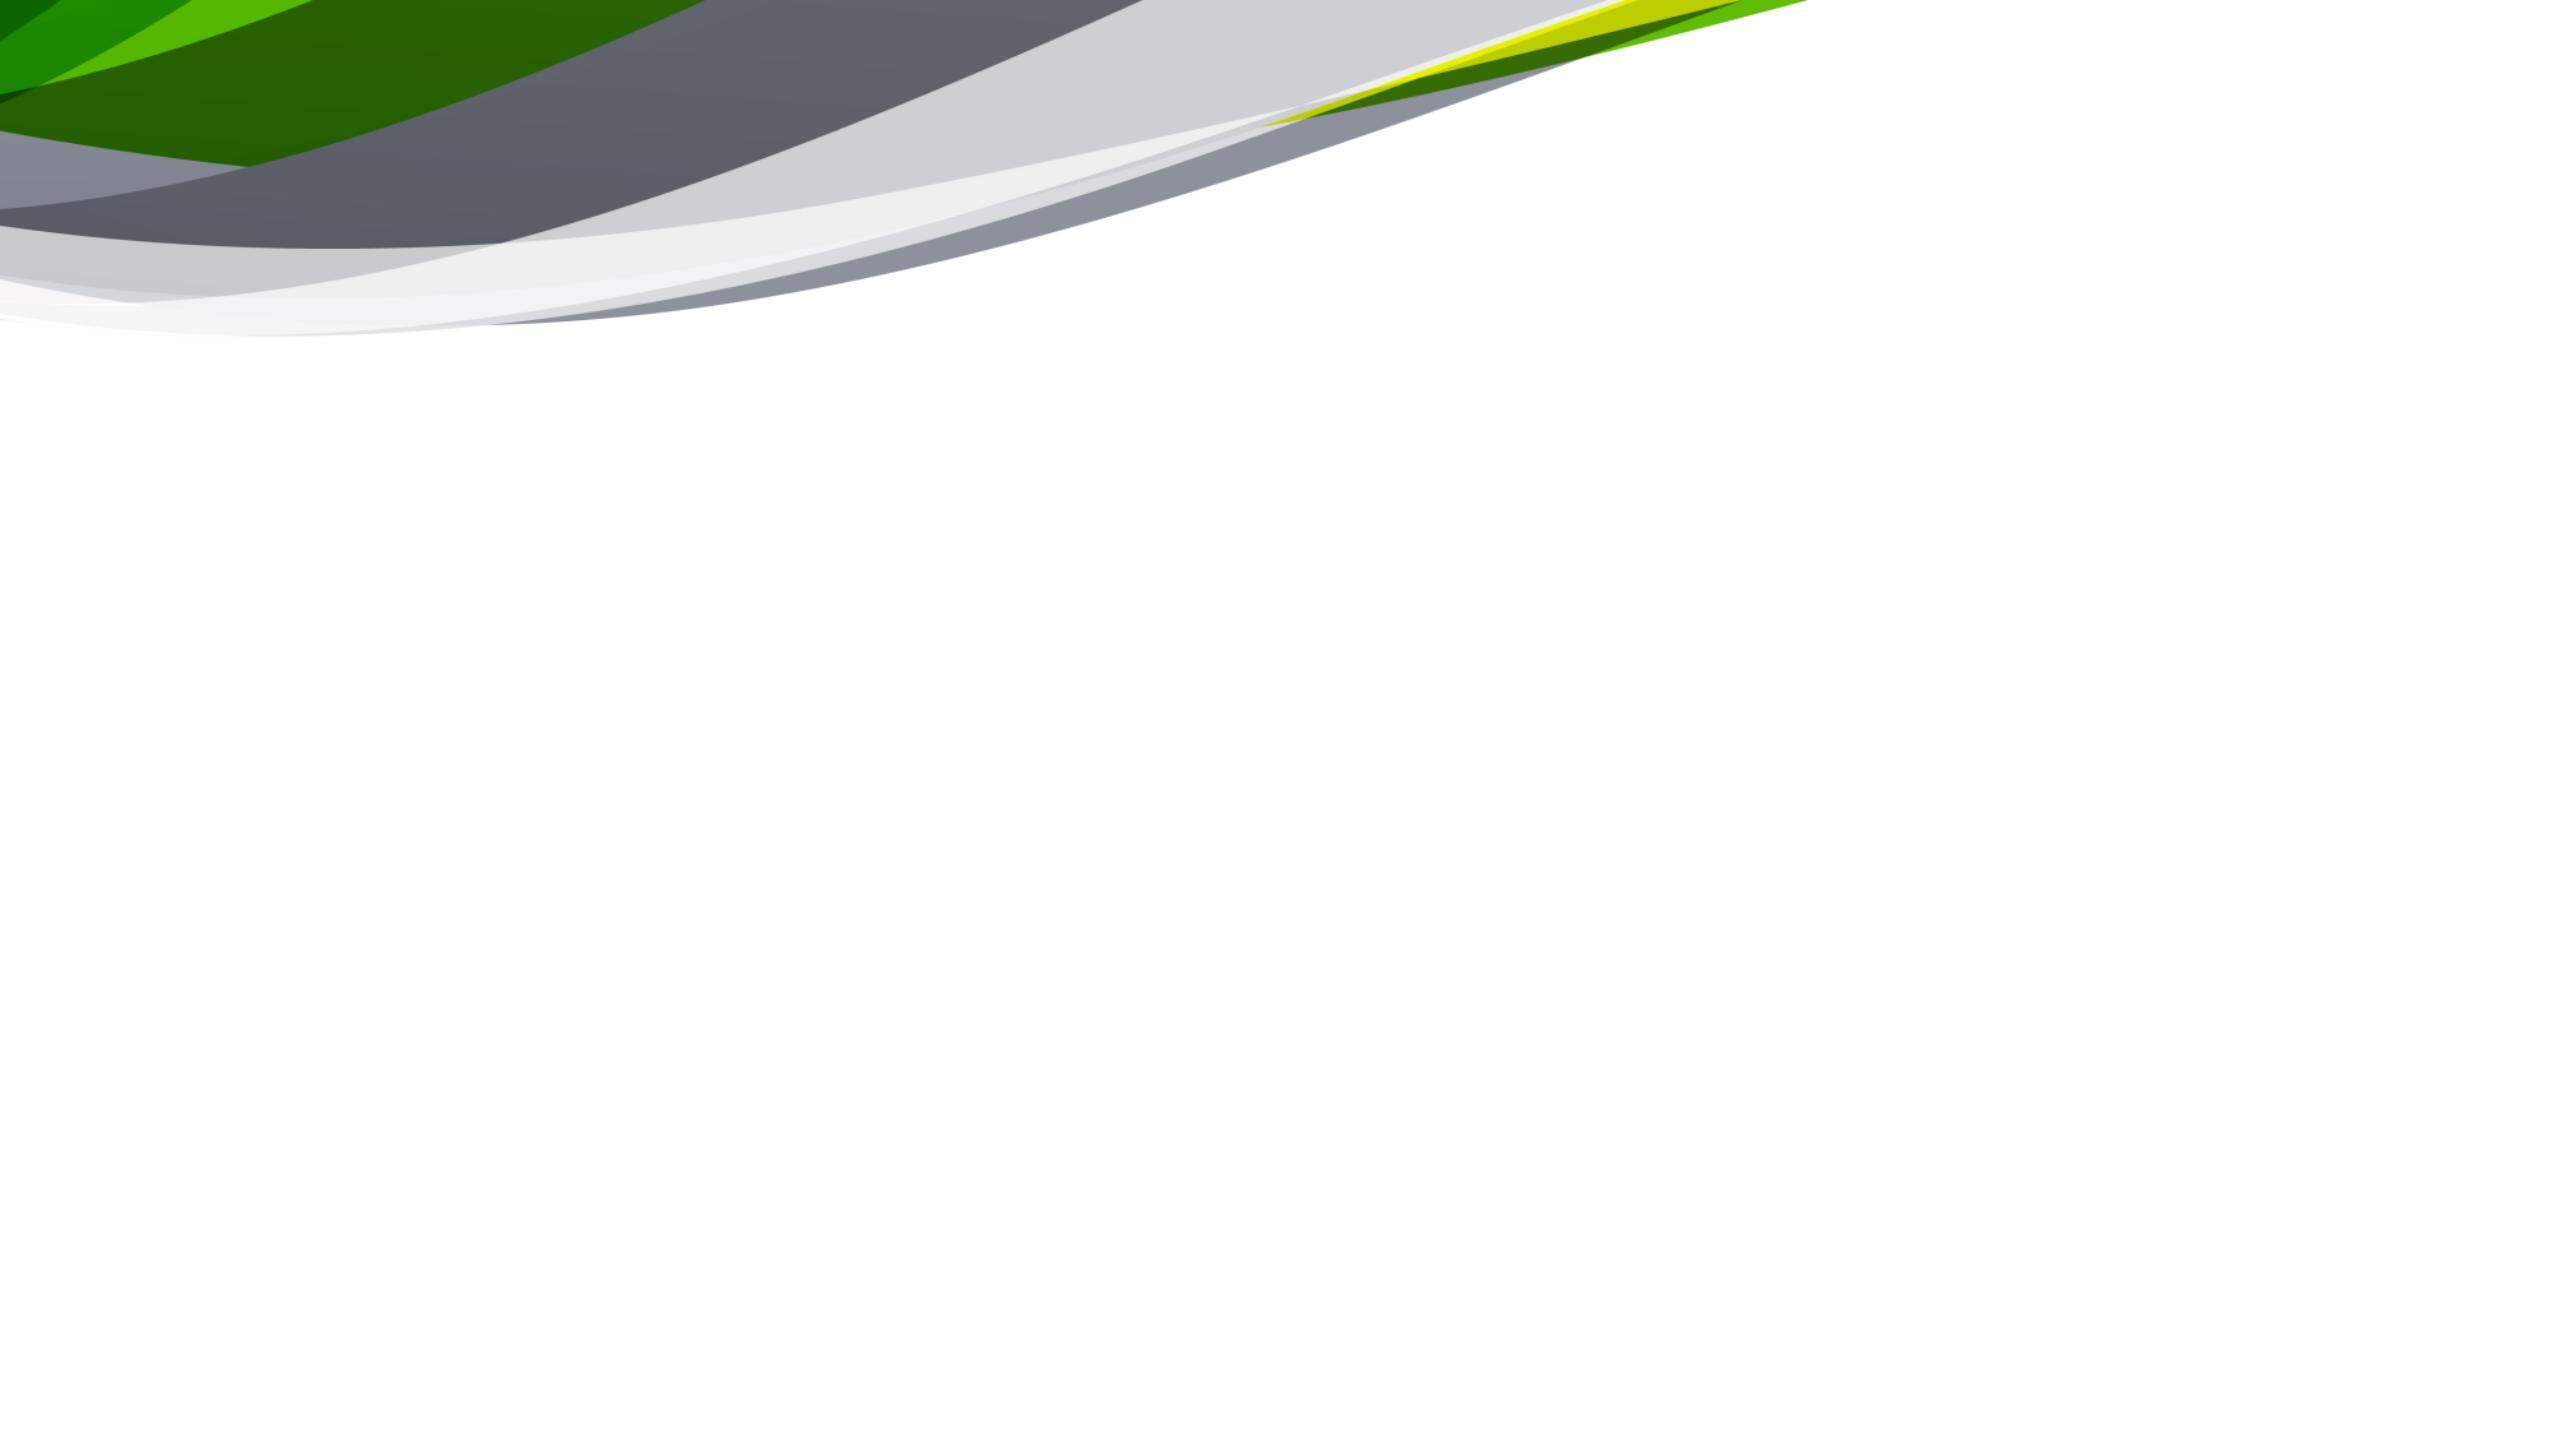 綠灰配色的抽象動感曲線PPT背景圖片